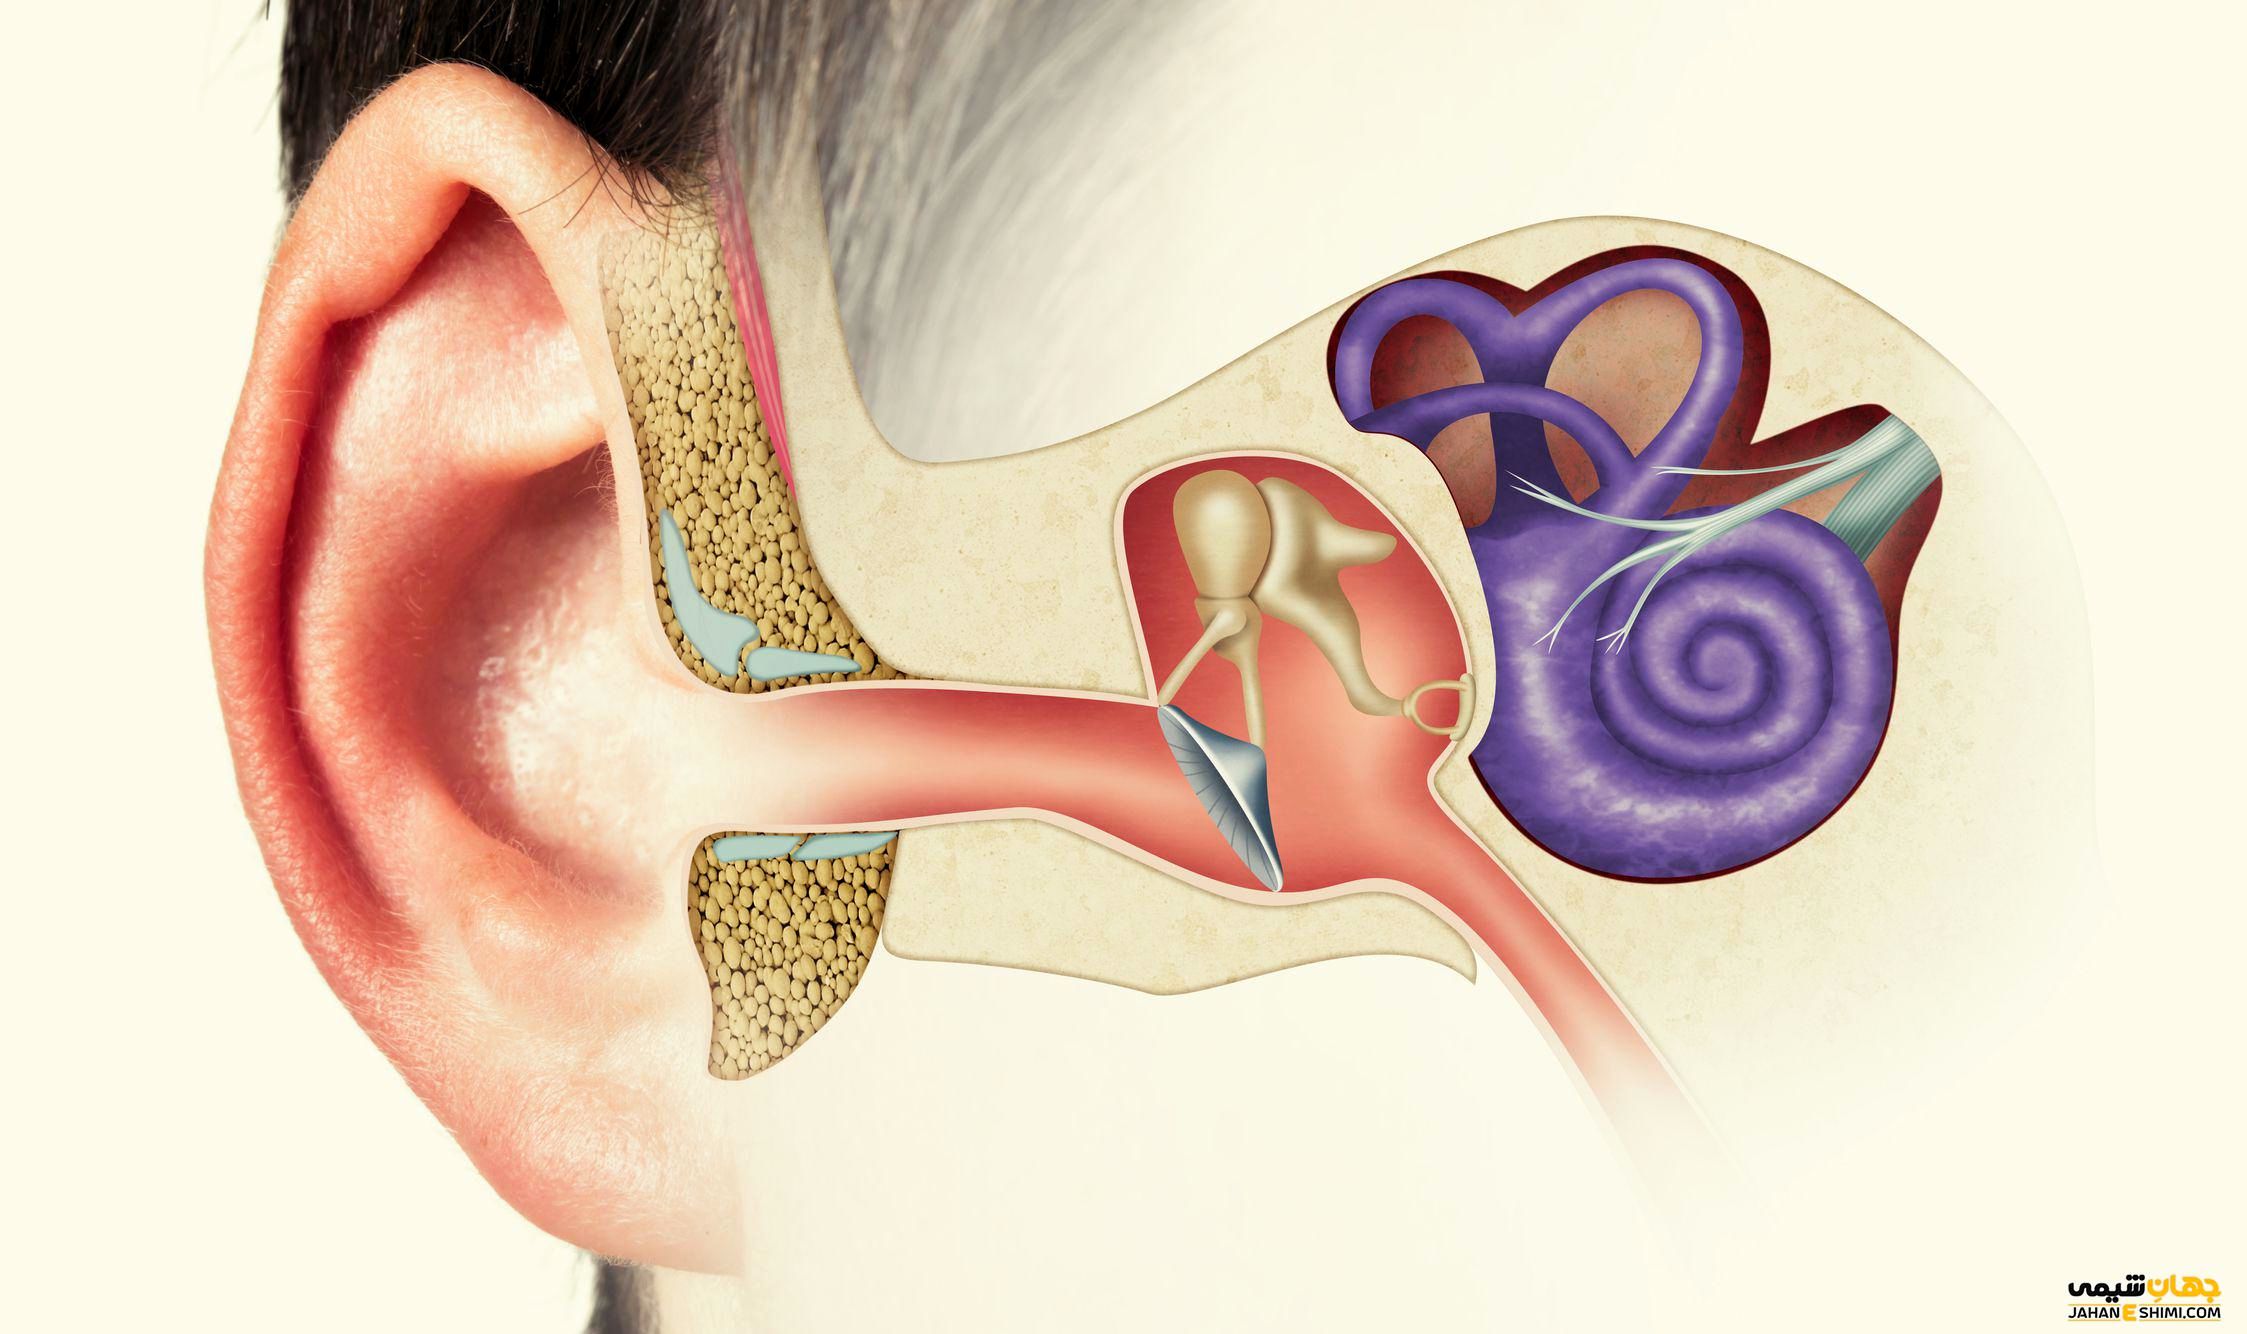  شایع ترین علائم و نشانه های کاهش شنوایی چیست؟ 